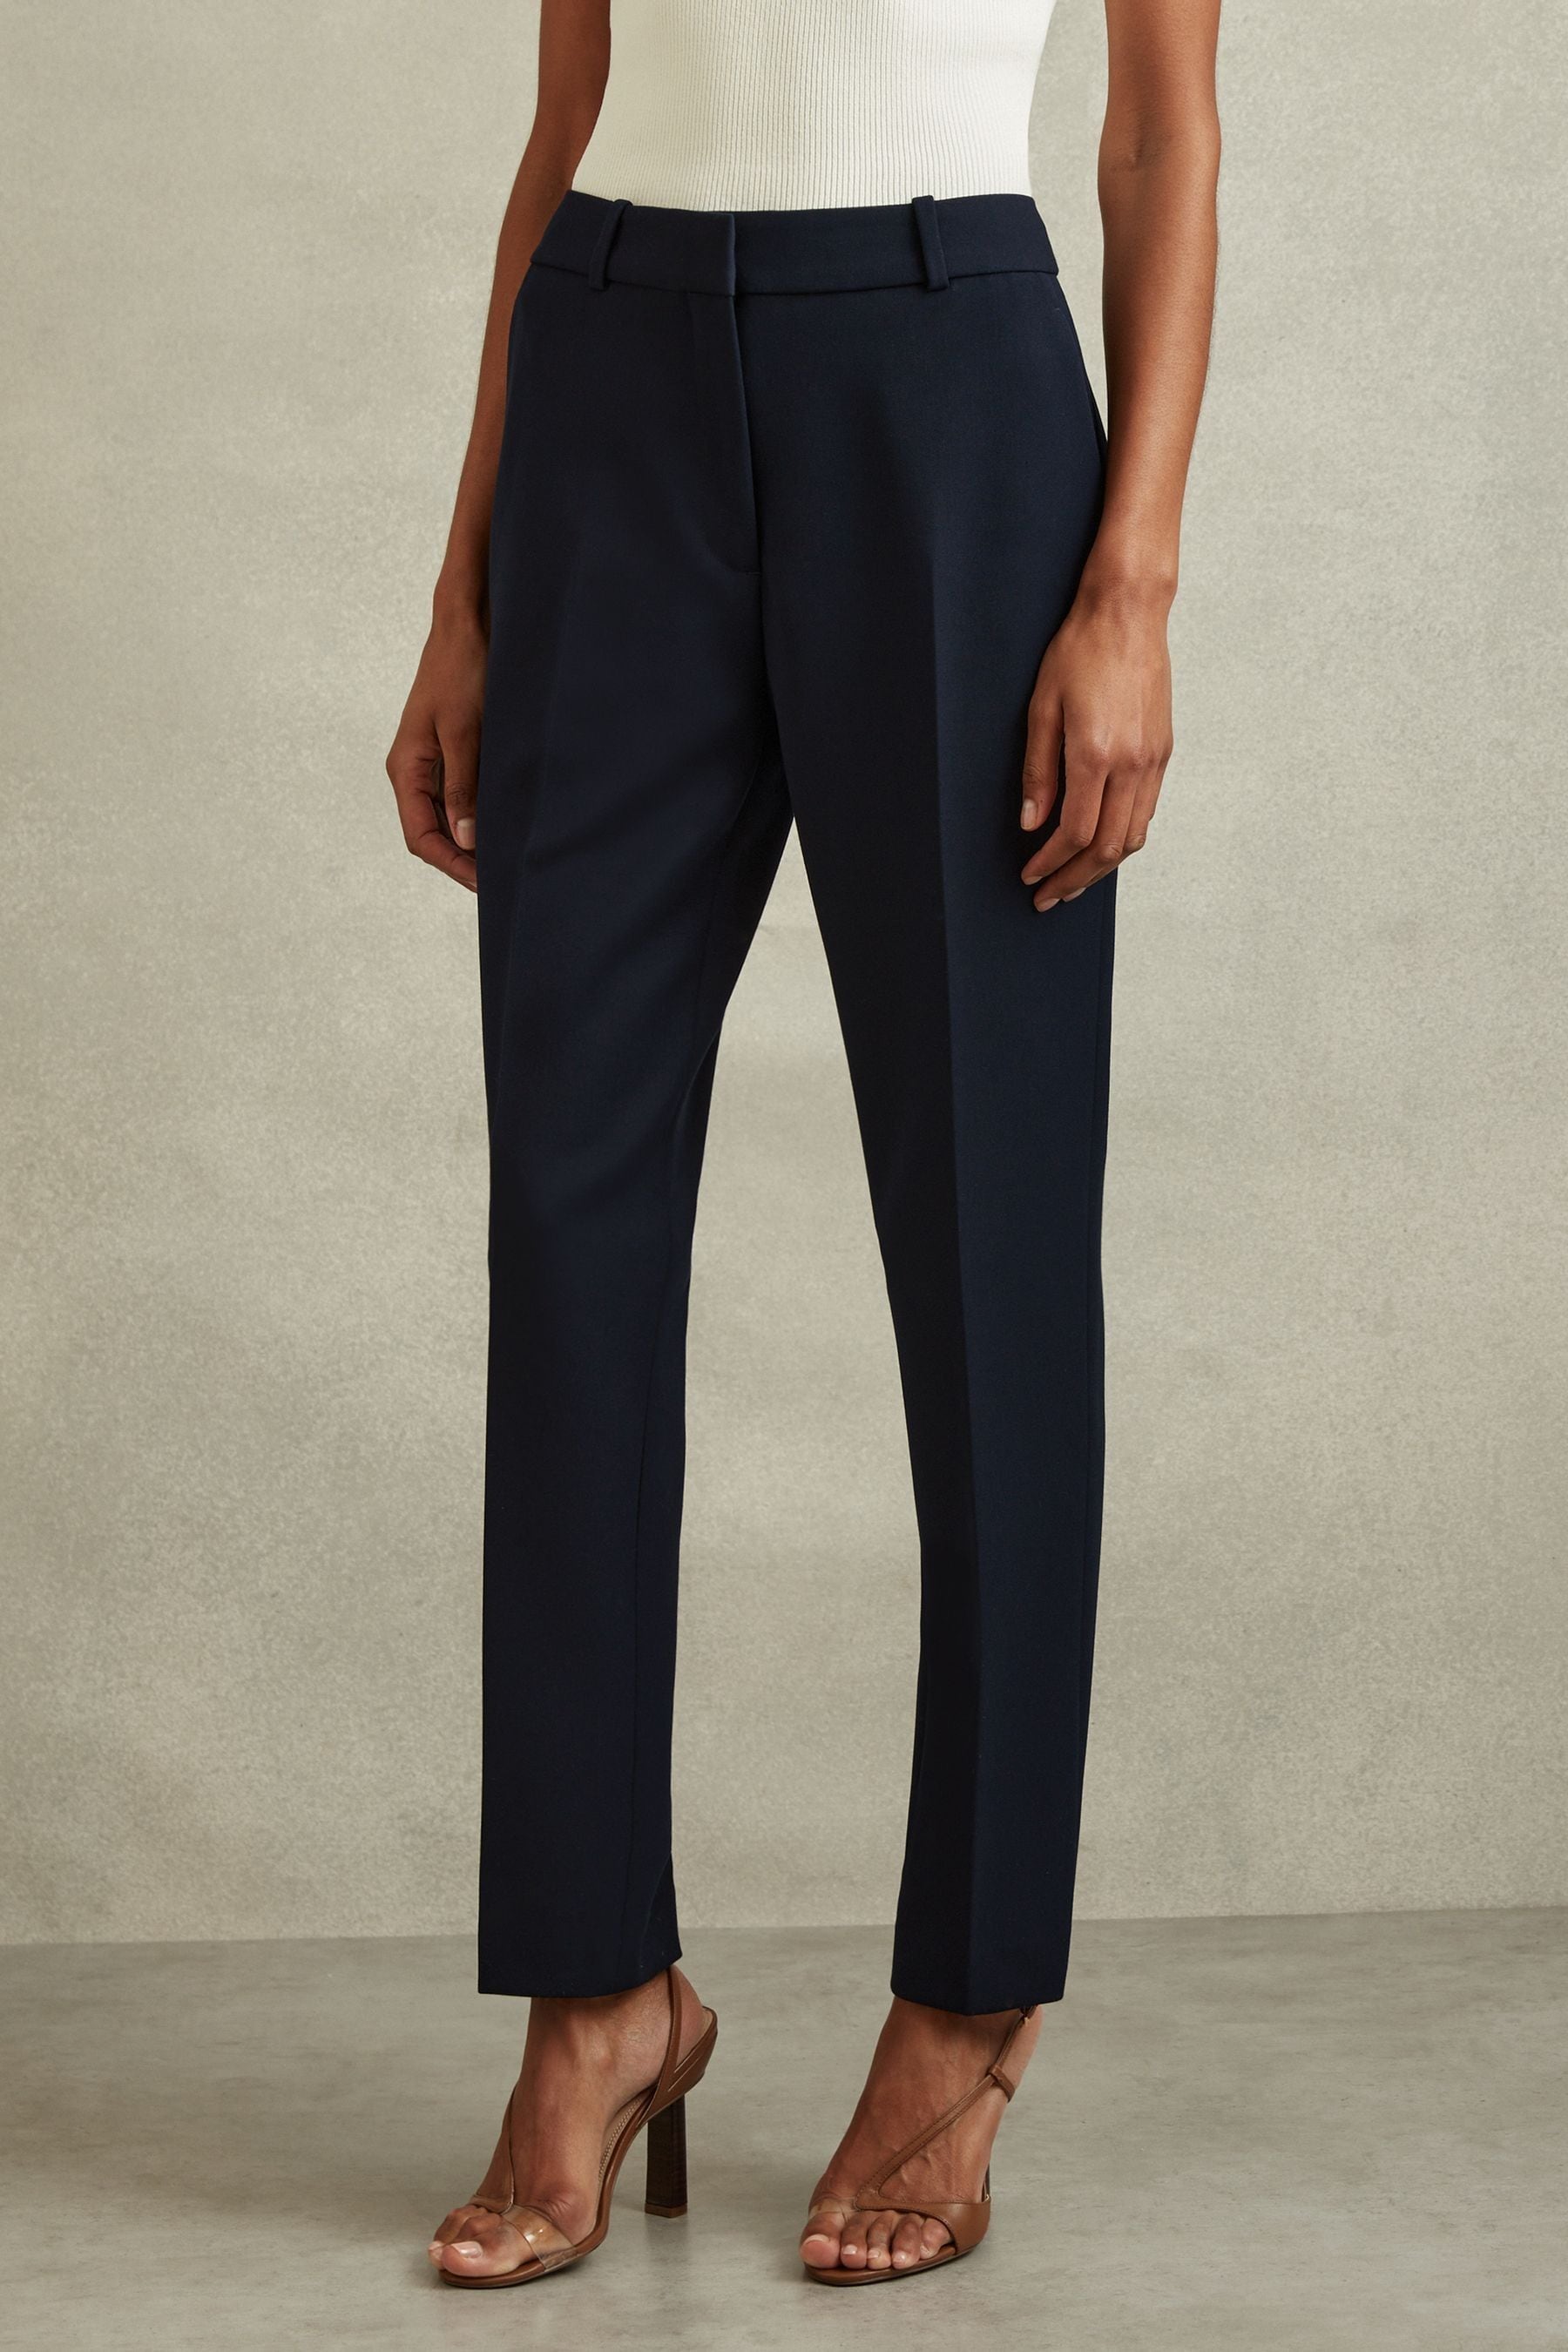 Reiss Gabi - Navy Petite Slim Fit Suit Trousers, Us 2